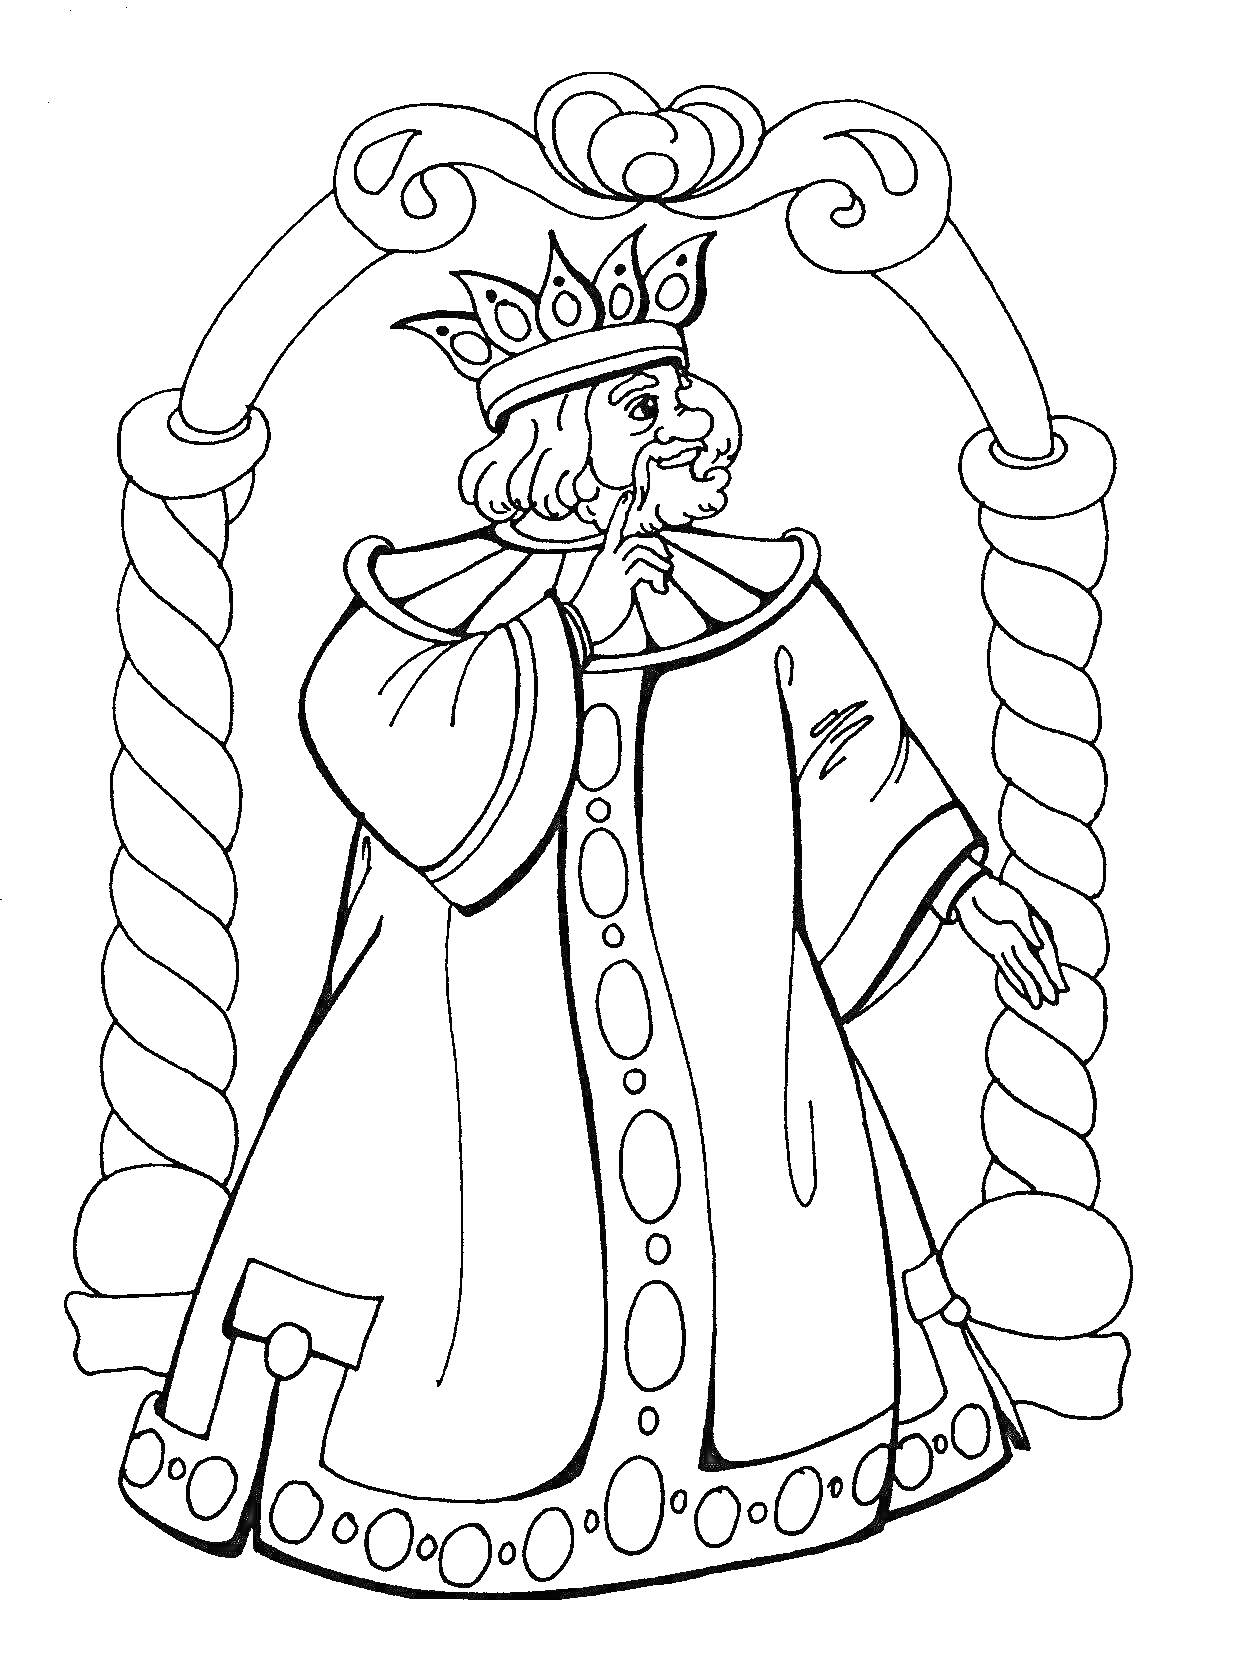 Раскраска Царь Салтан в короне и мантии под аркой